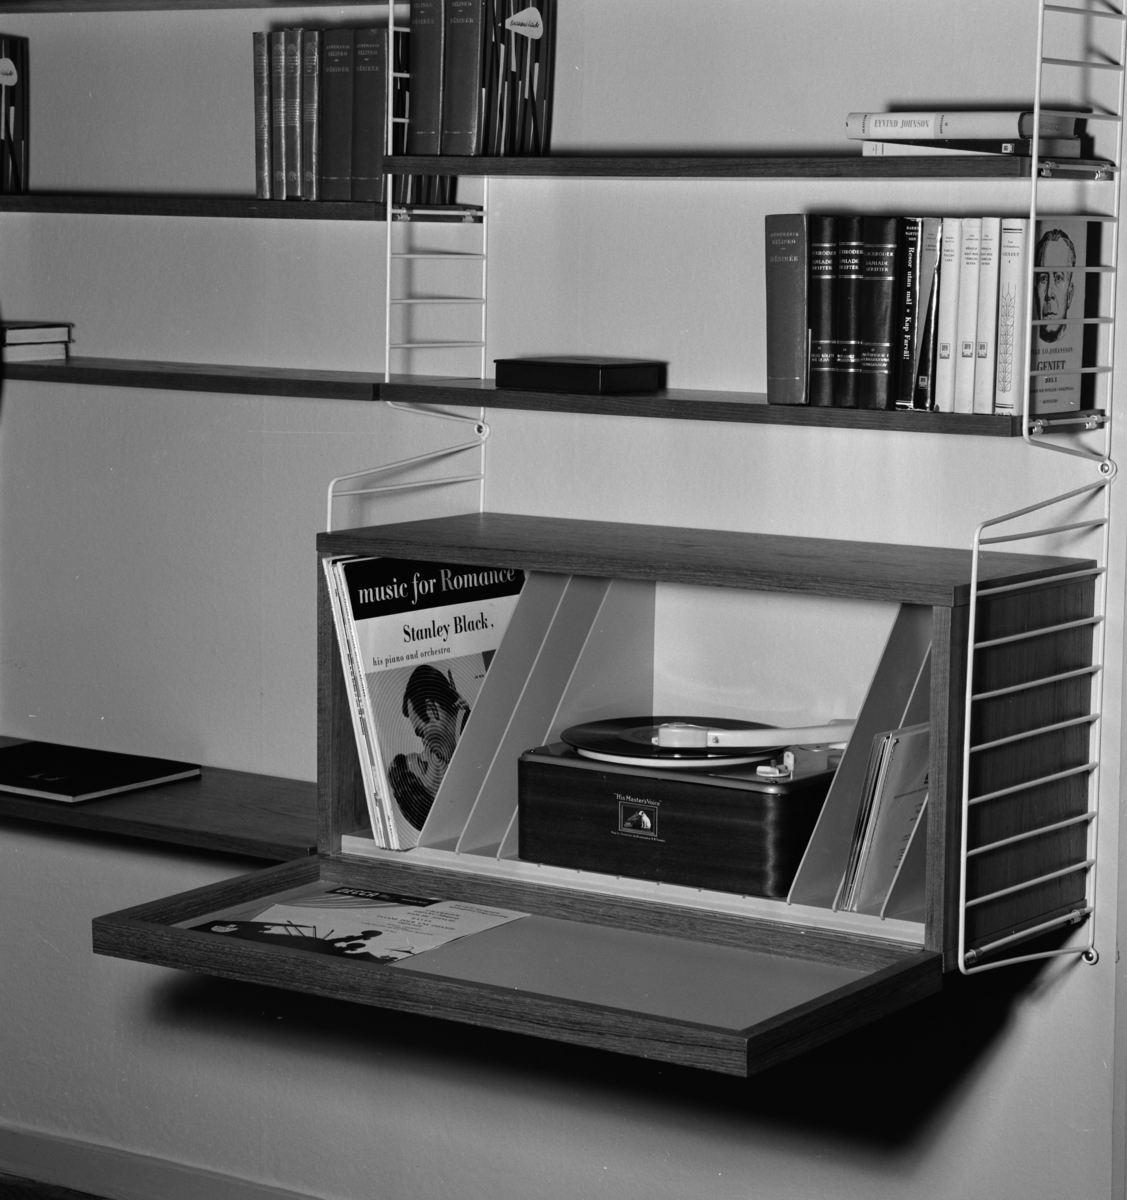 Förvaringsskåp och hylla (stringhylla) med grammofonskivor och skivspelare